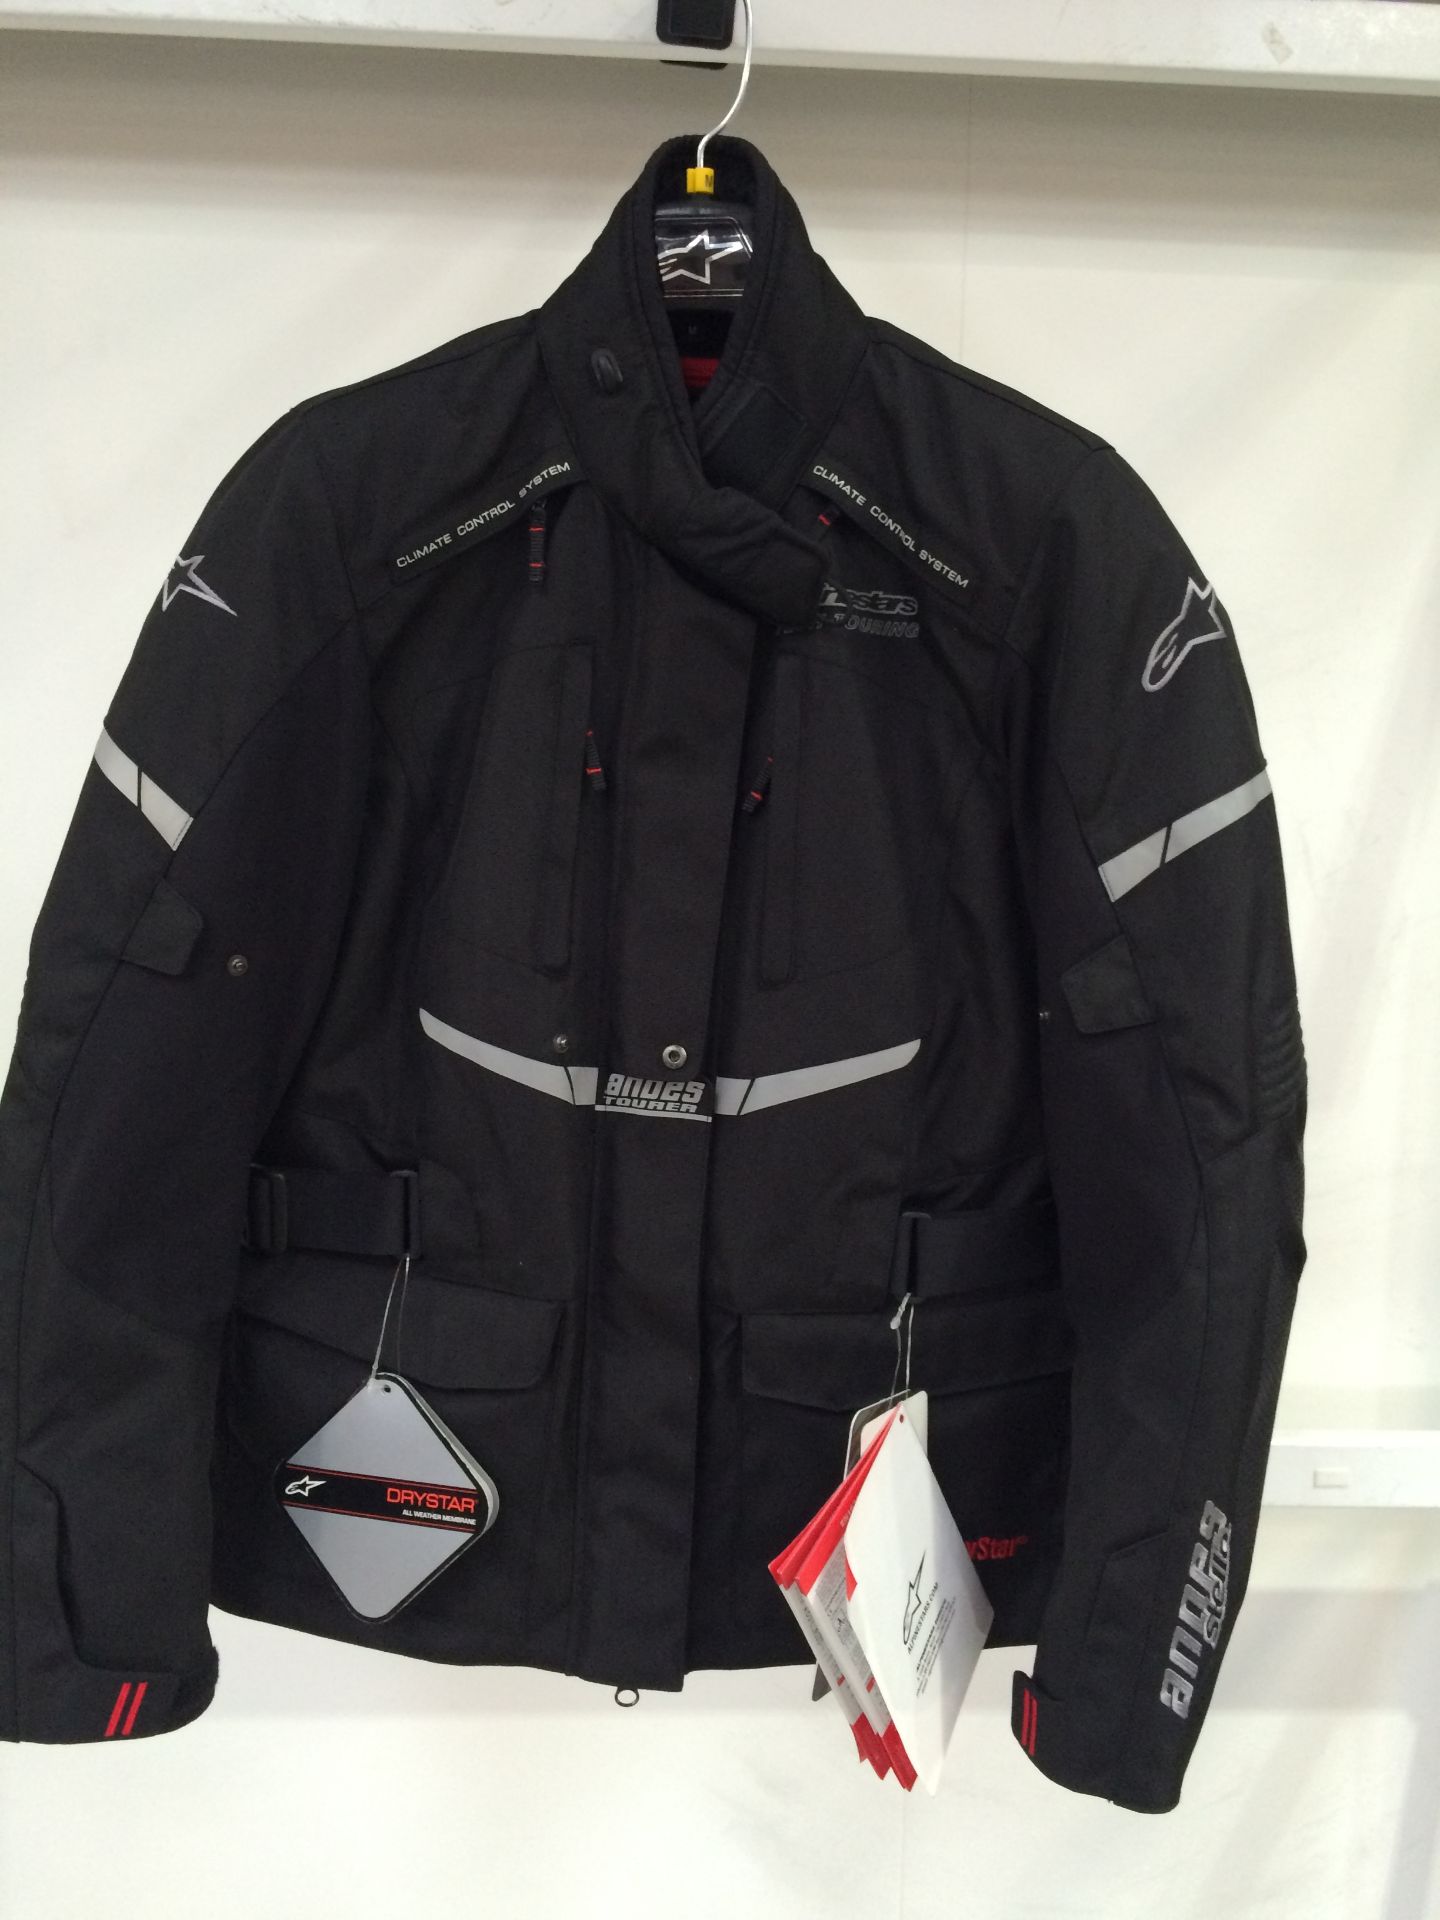 Alpinestars Drystar Jacket. Size XL